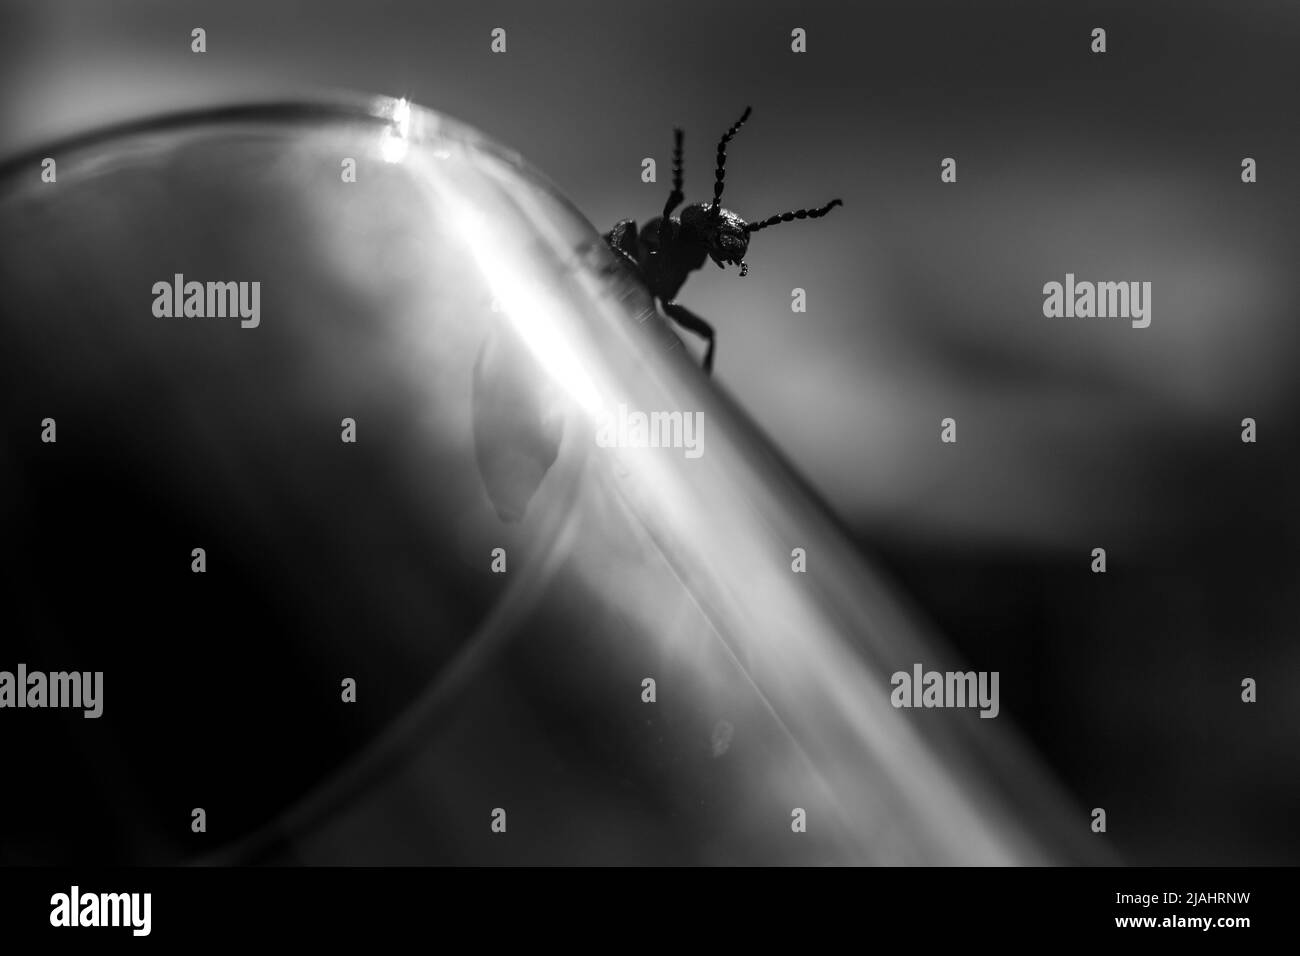 Eine schwarz-weiße künstlerische Makrofotografie eines Käfers, die einem dunklen Dämon aus Albträumen ähnelt. Lange Hörner erschreckende Angst. Stockfoto